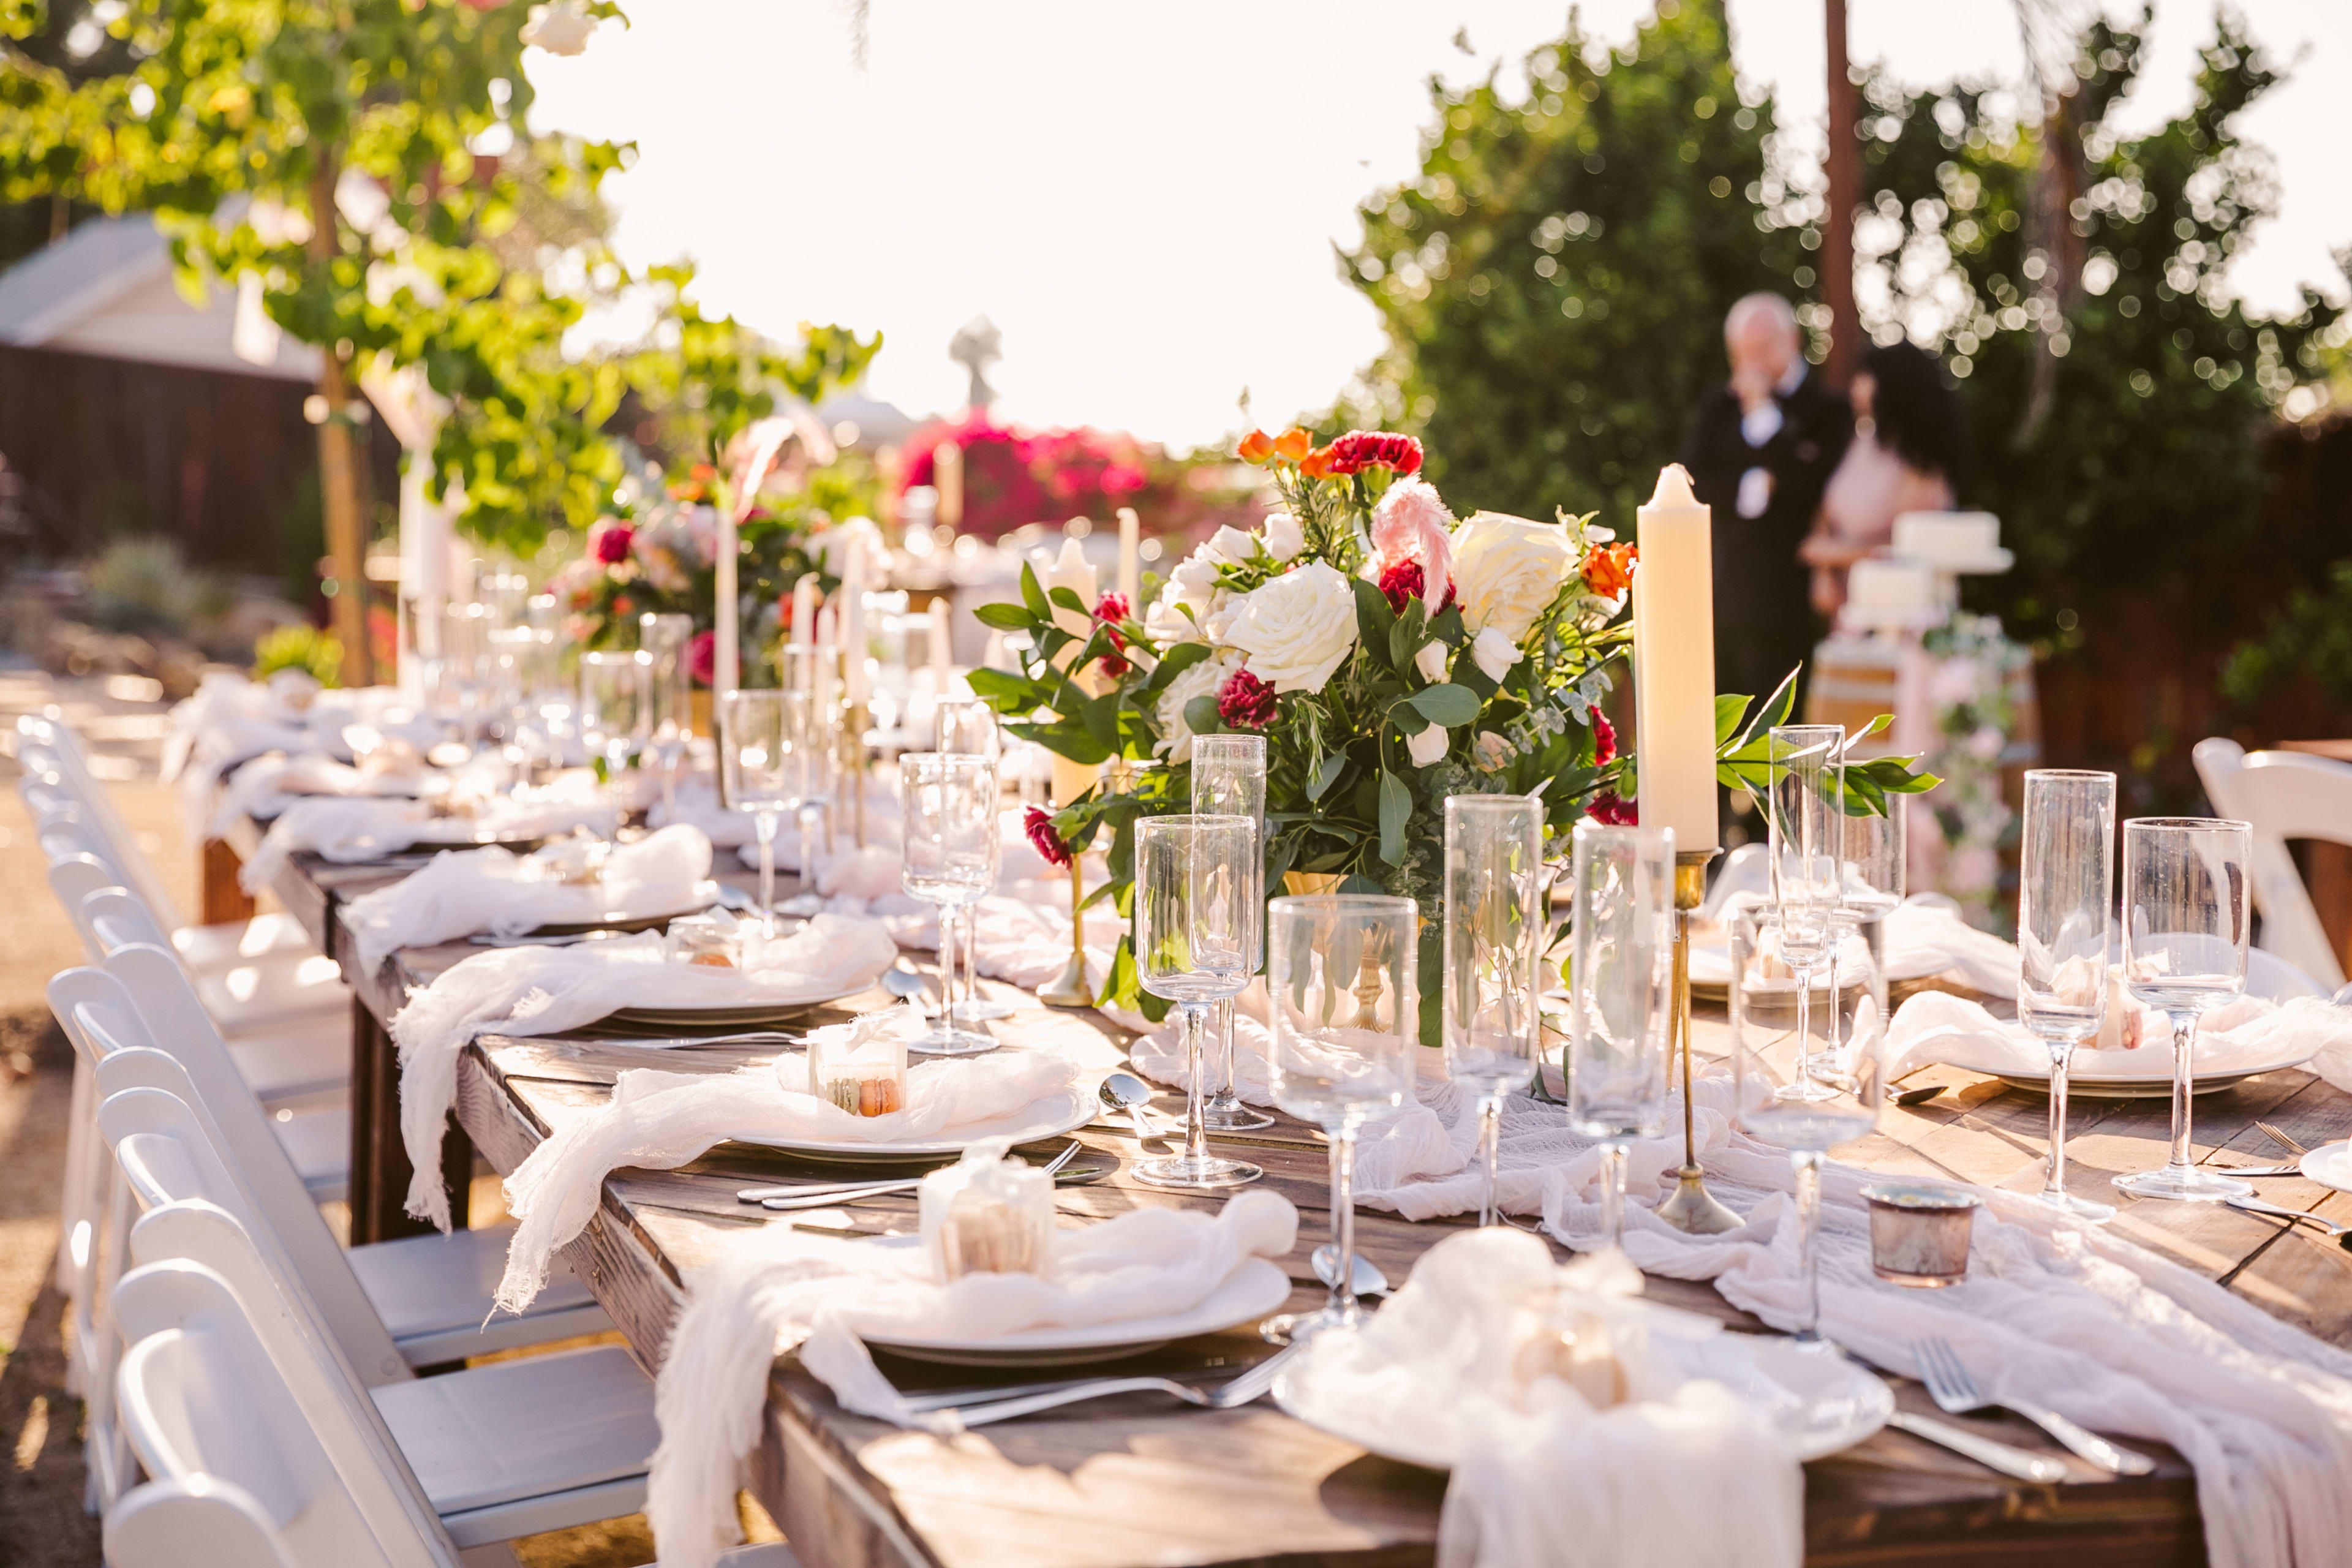 outdoor wedding venue dallas